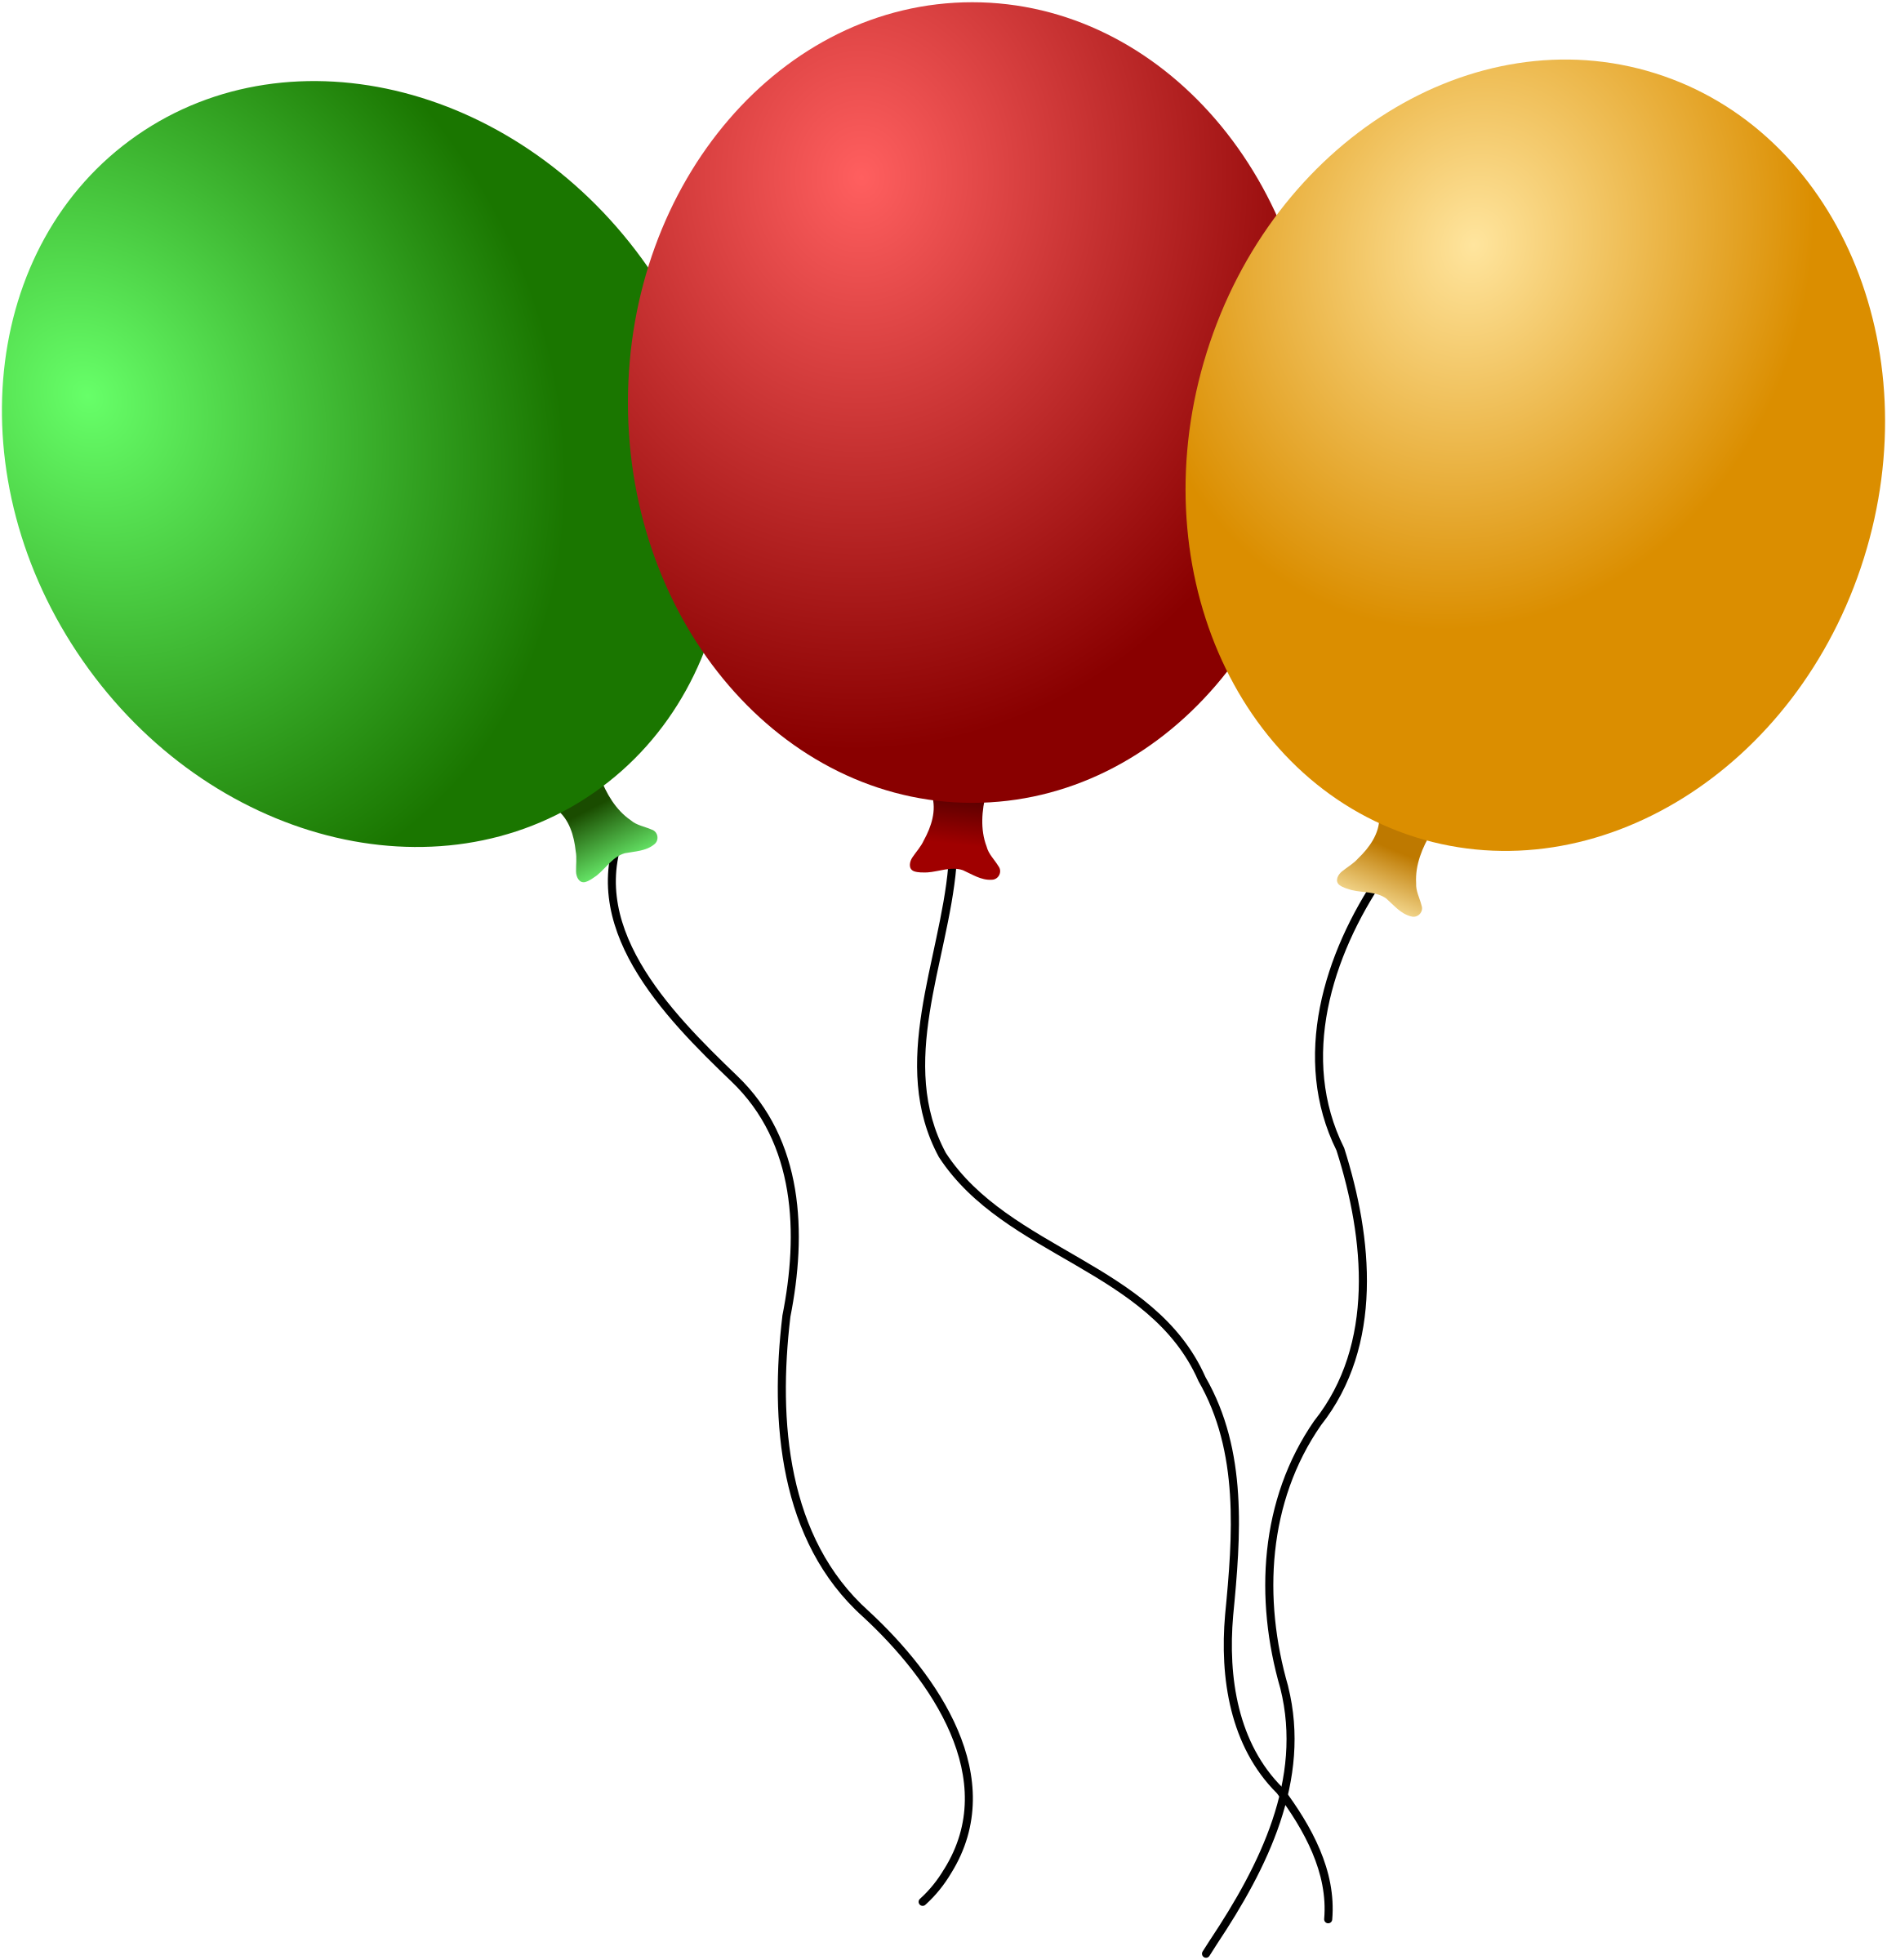 Три воздушных шарика